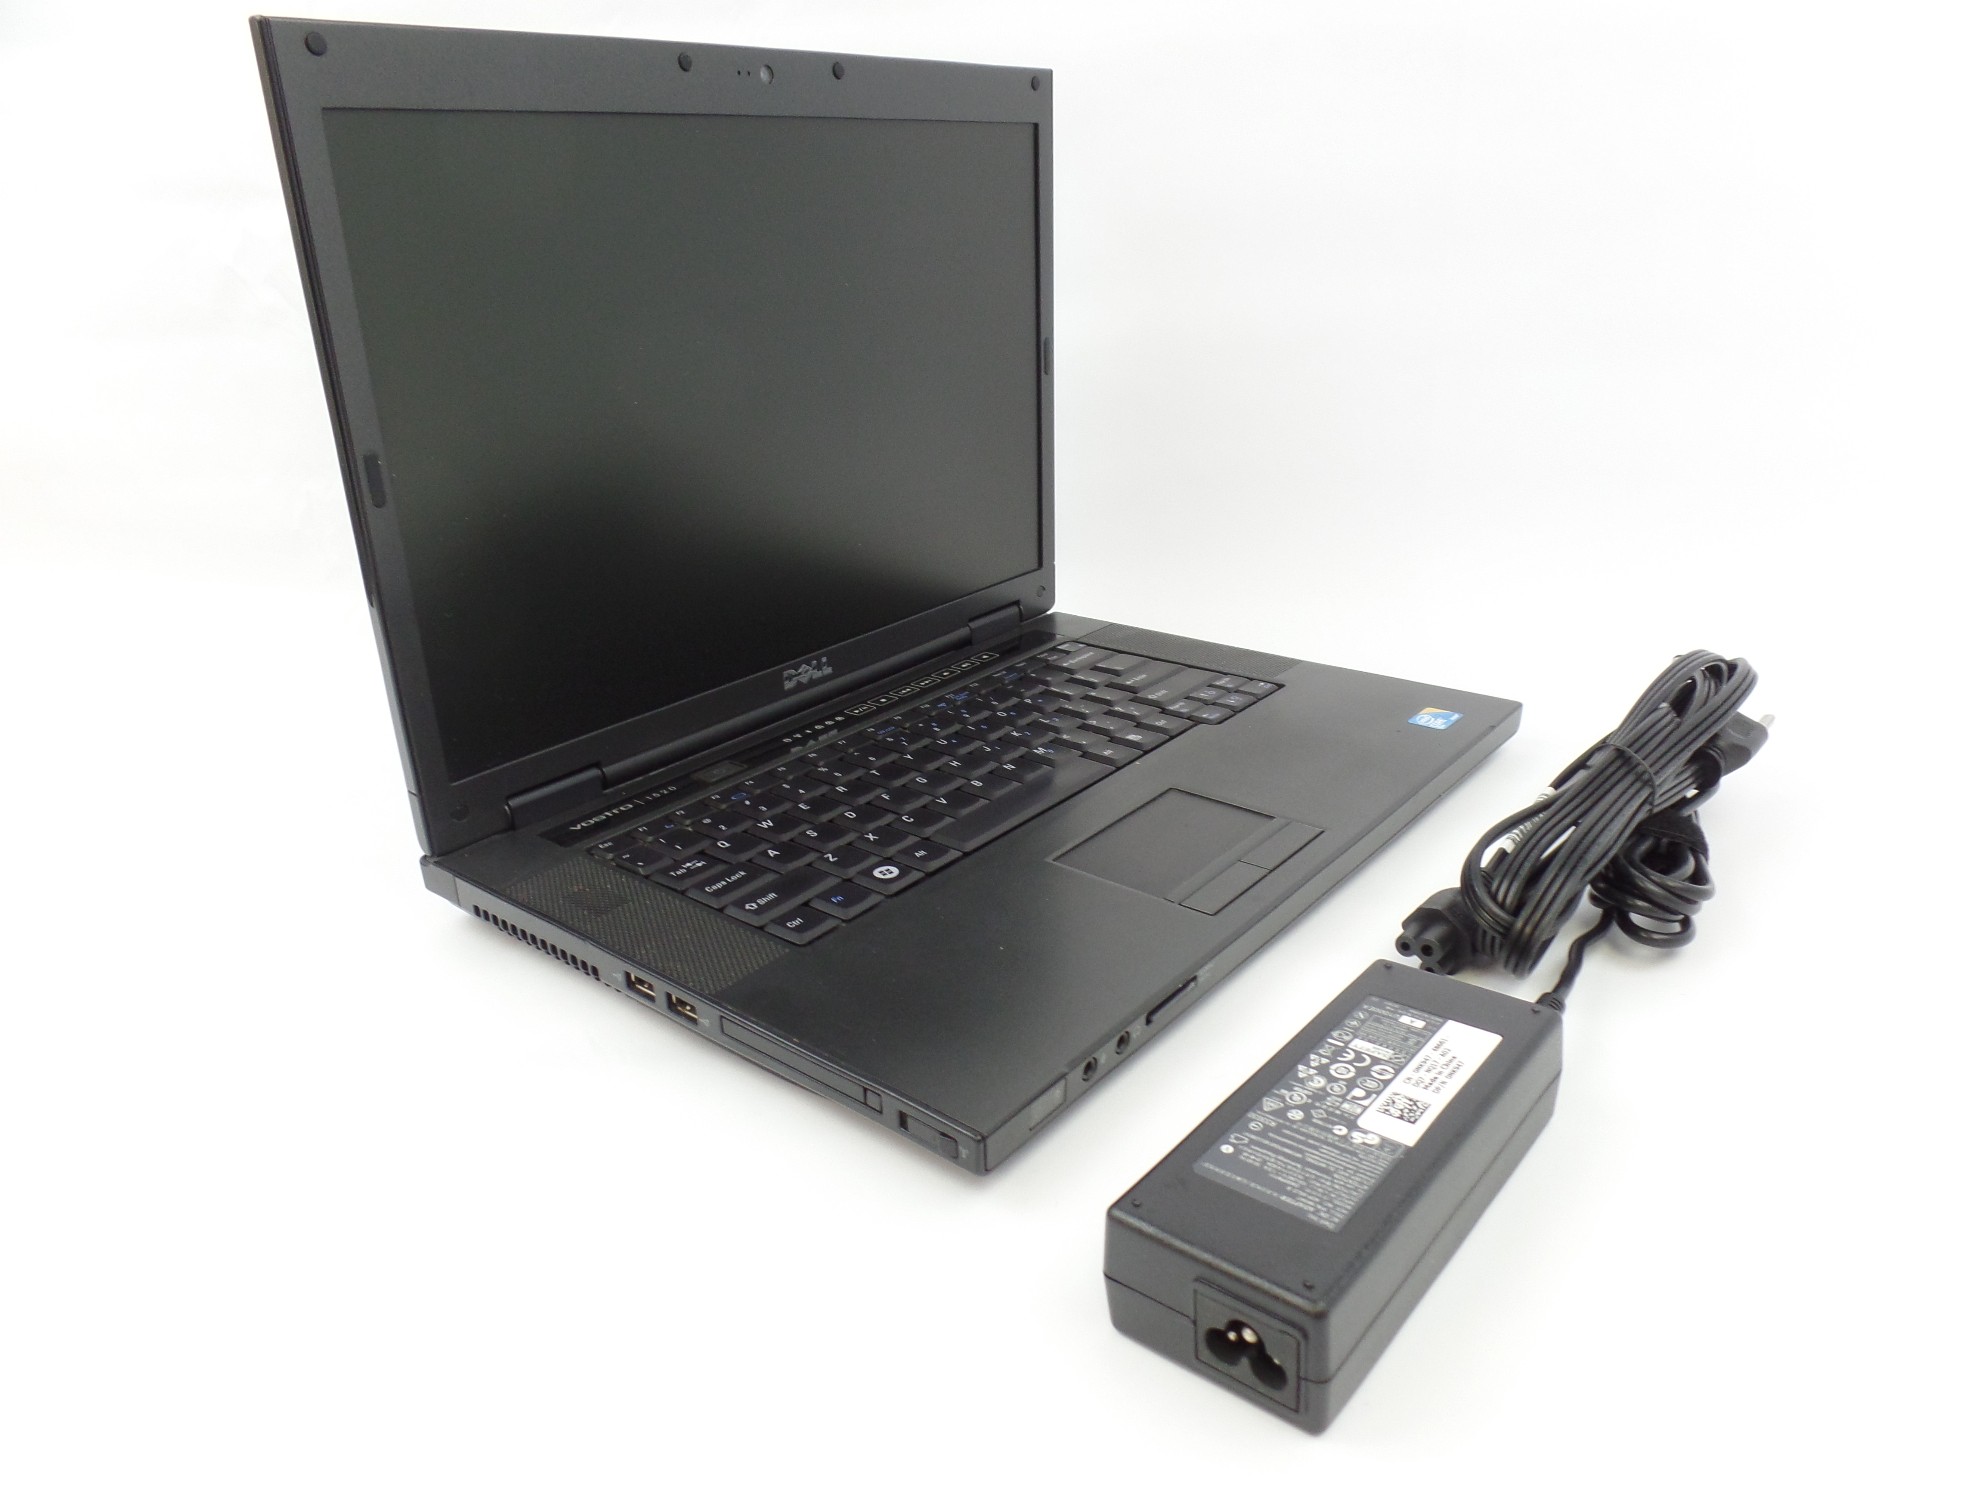 Dell Vostro 1520 15" Intel Core 2 Duo P7570 2.26GHz 3GB 160GB Laptop U1